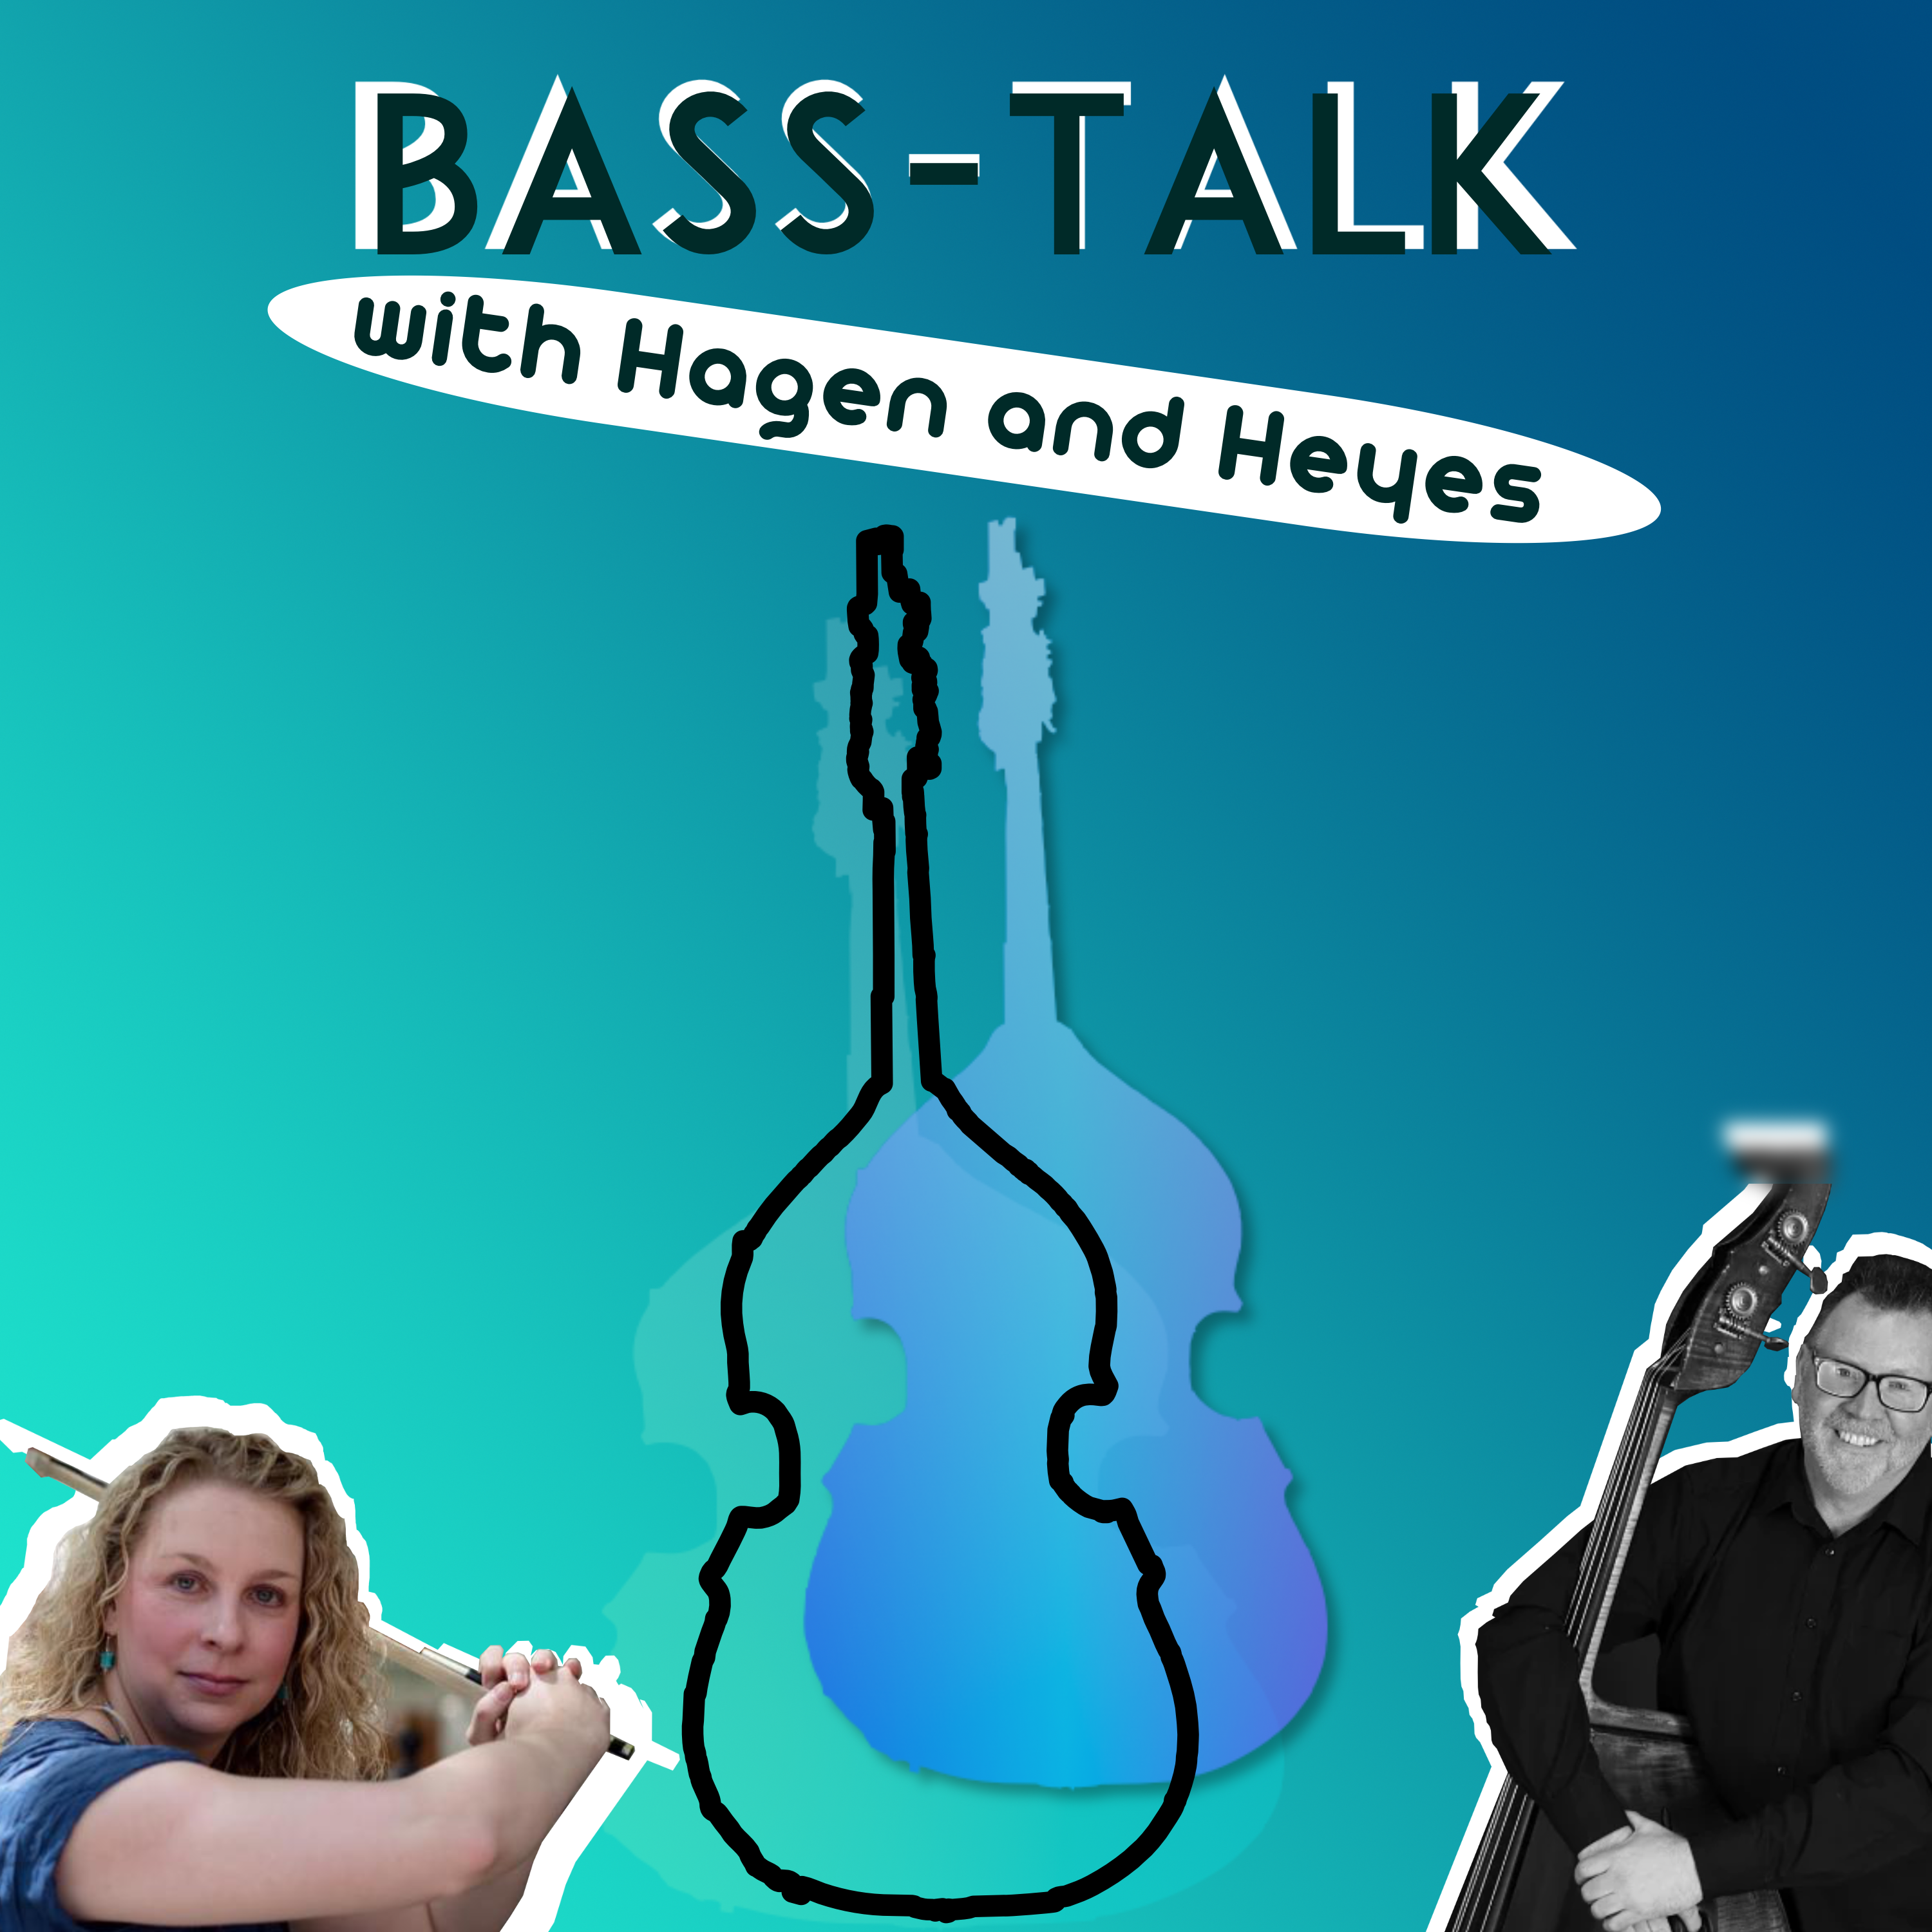 Bass-Talk With Hagen & Heyes